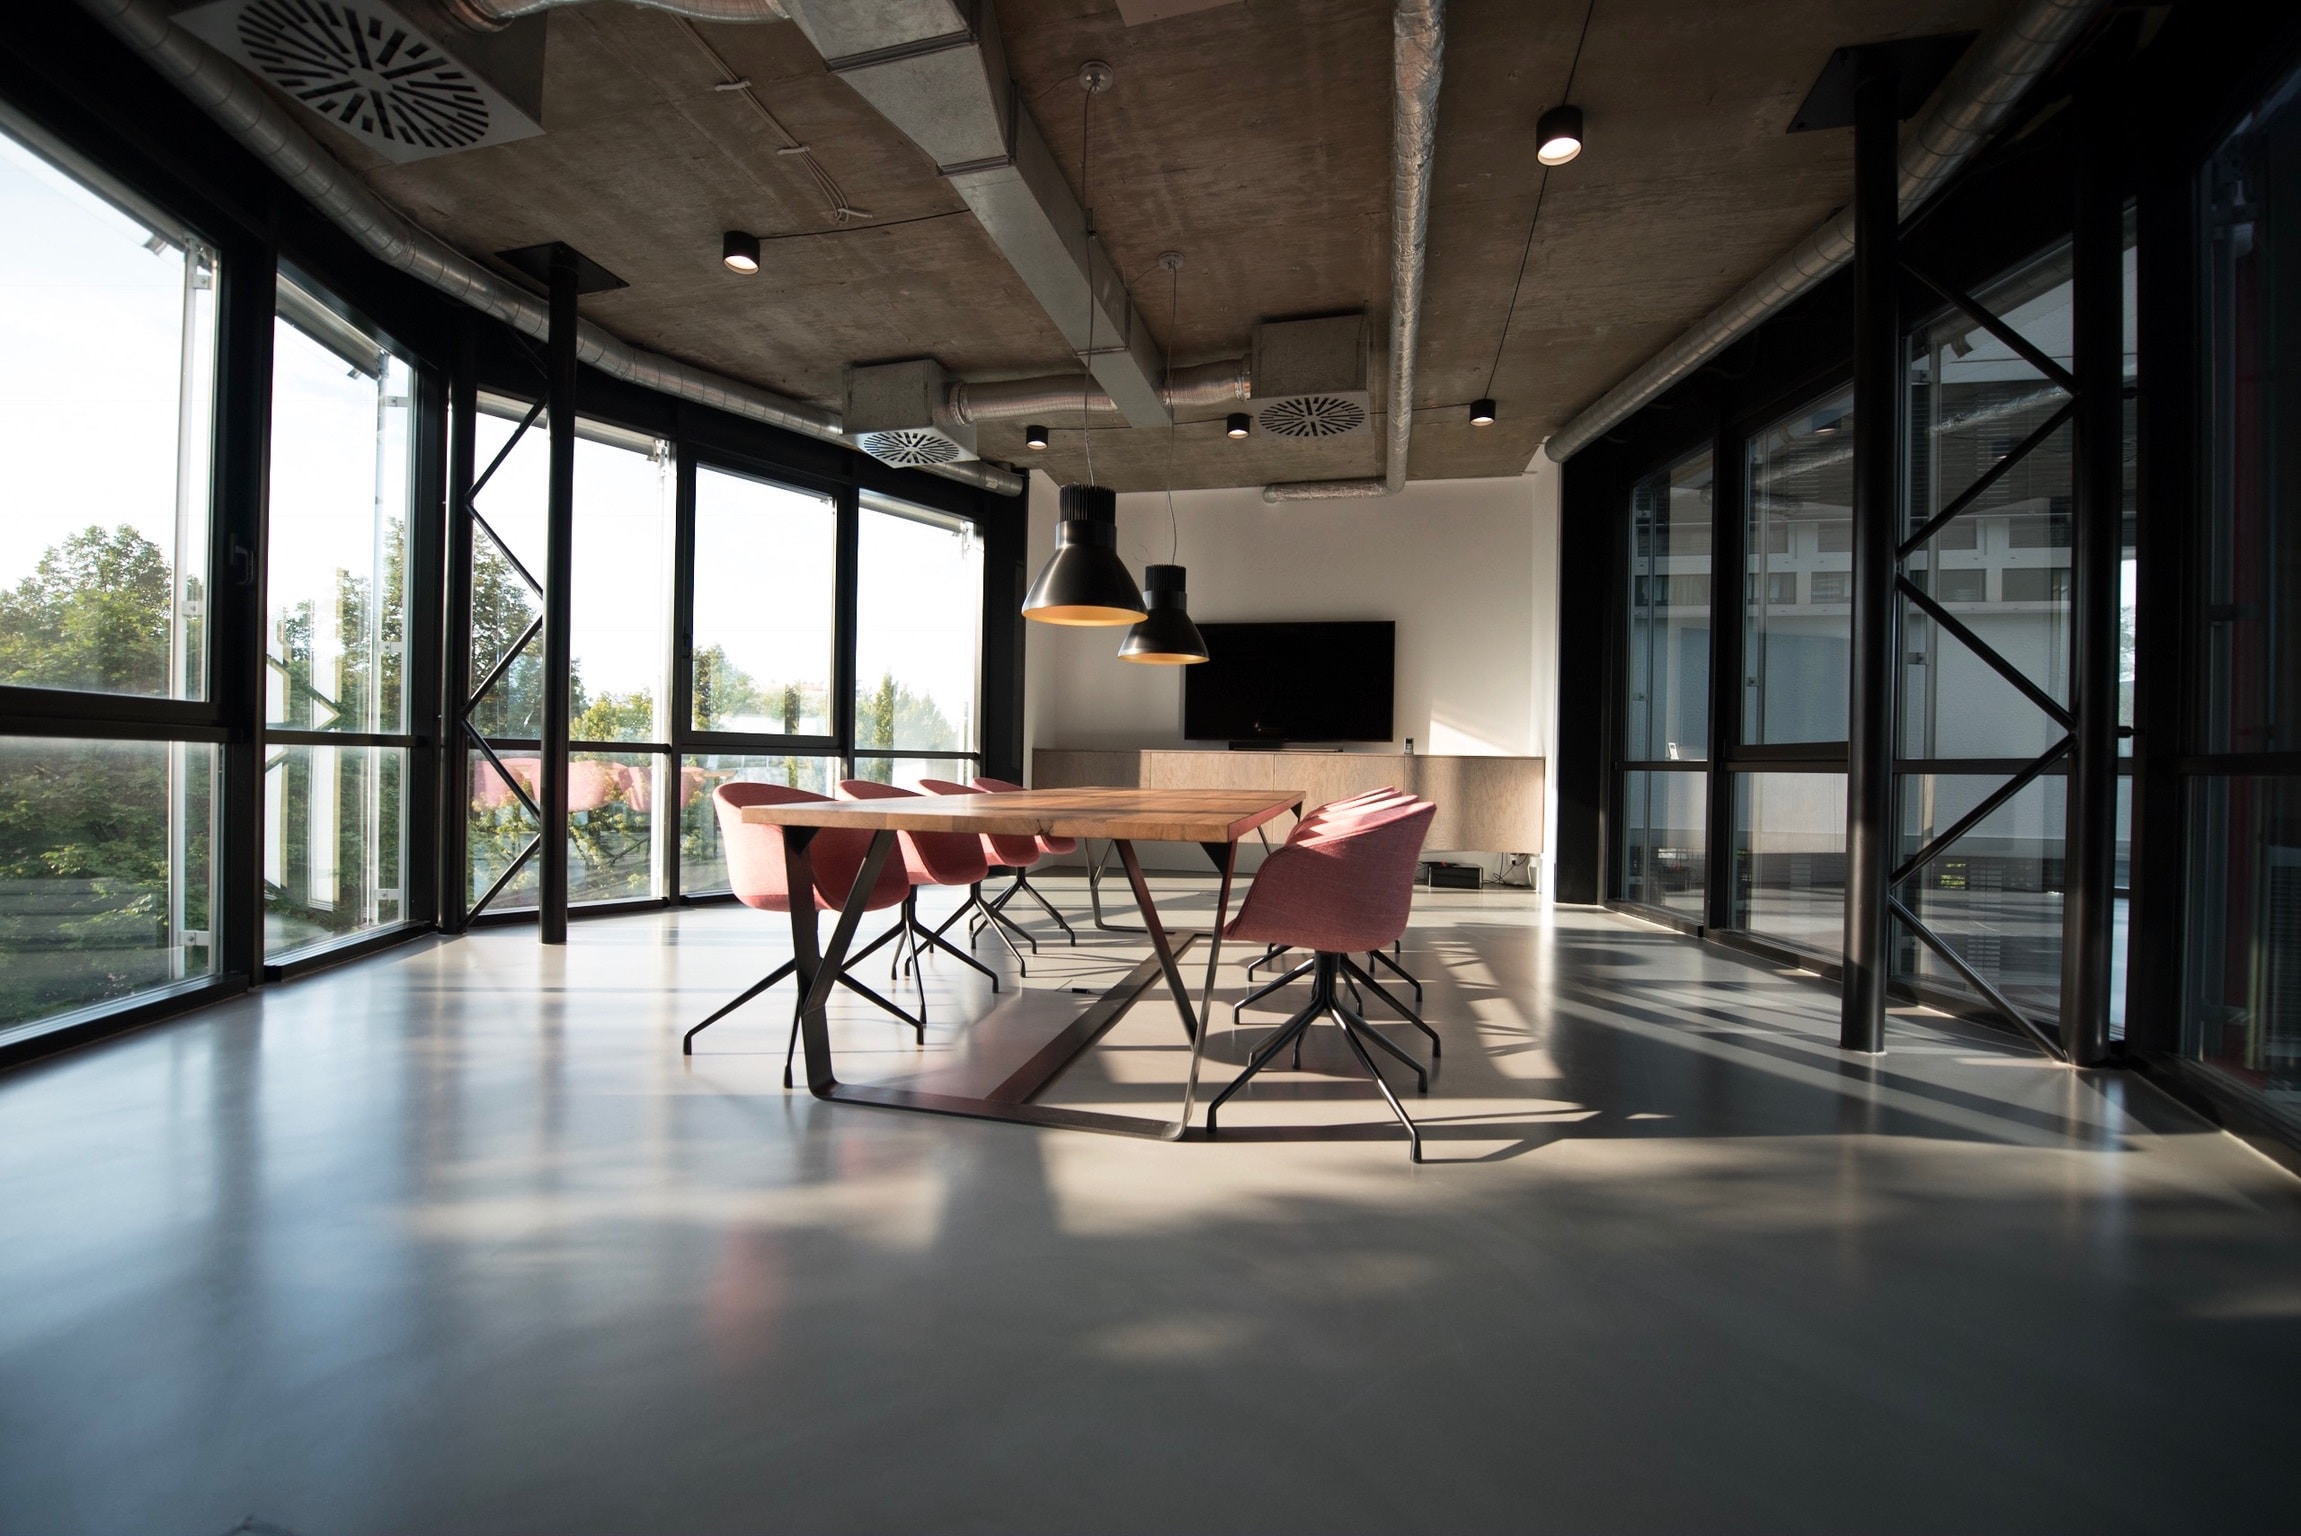 Oficina - Alquiler de espacios flexibles y coworking en AZCA, Madrid